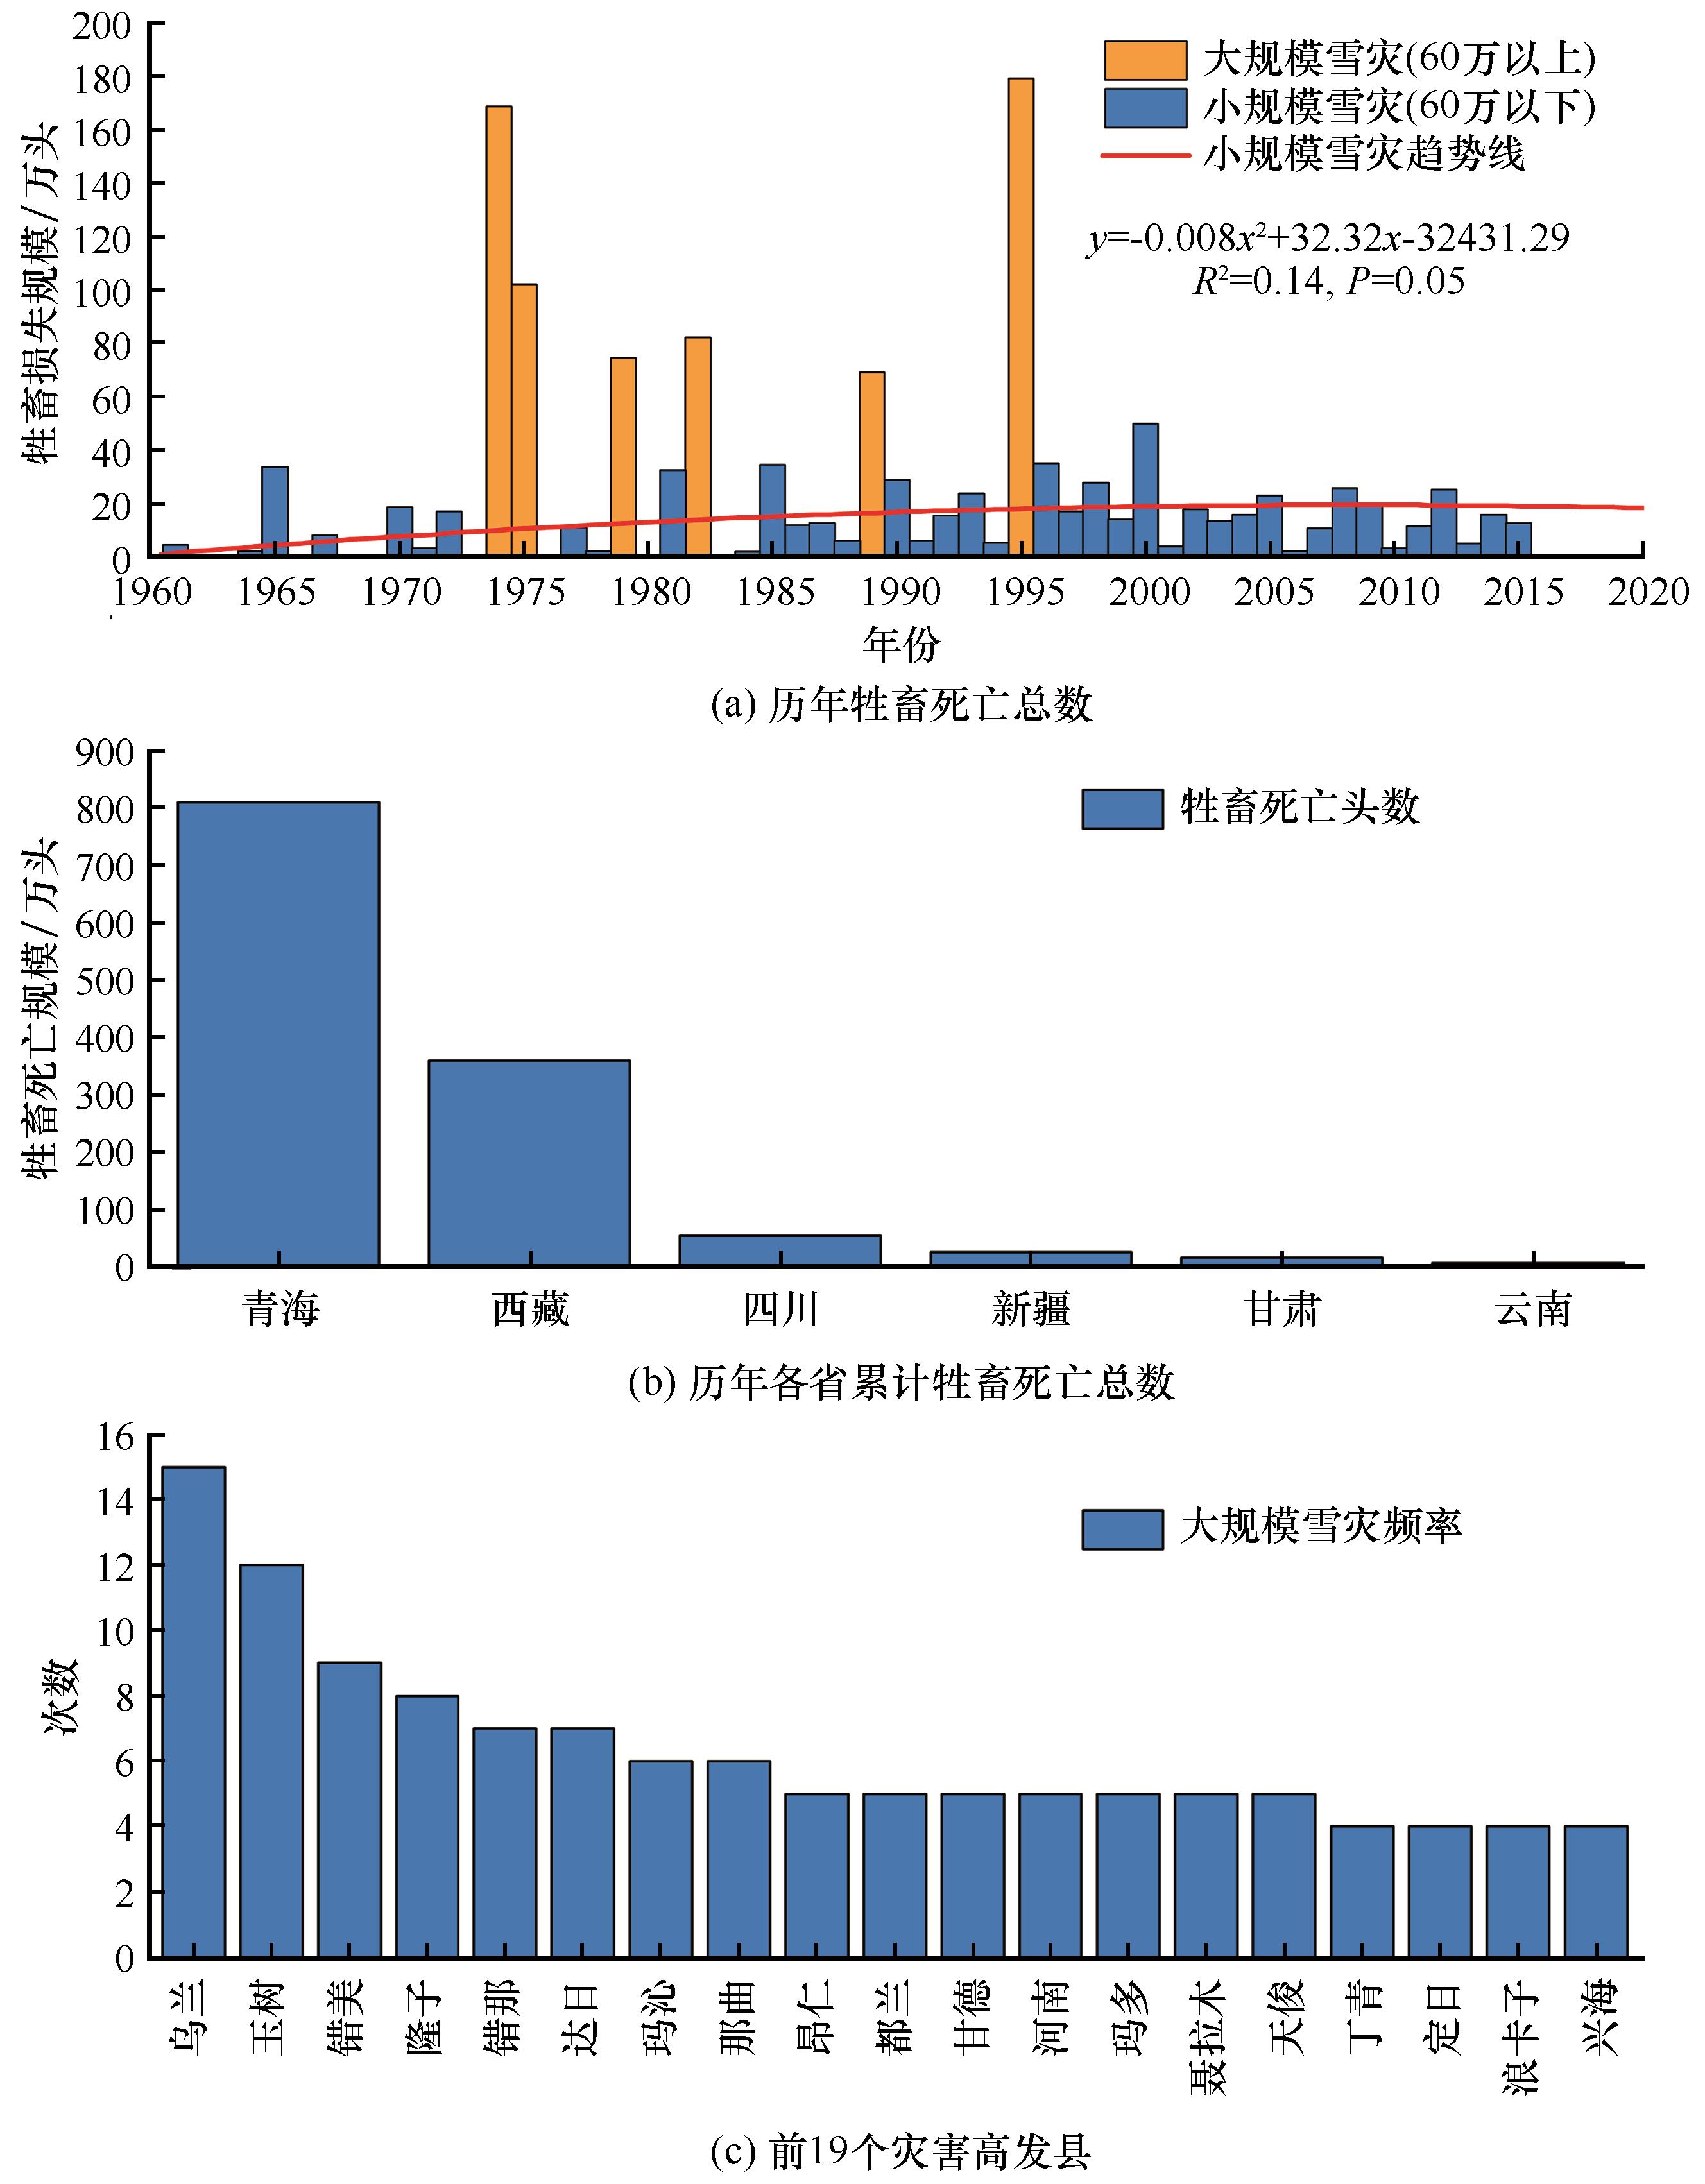 近18年中国传染病死亡人数统计 - 知乎